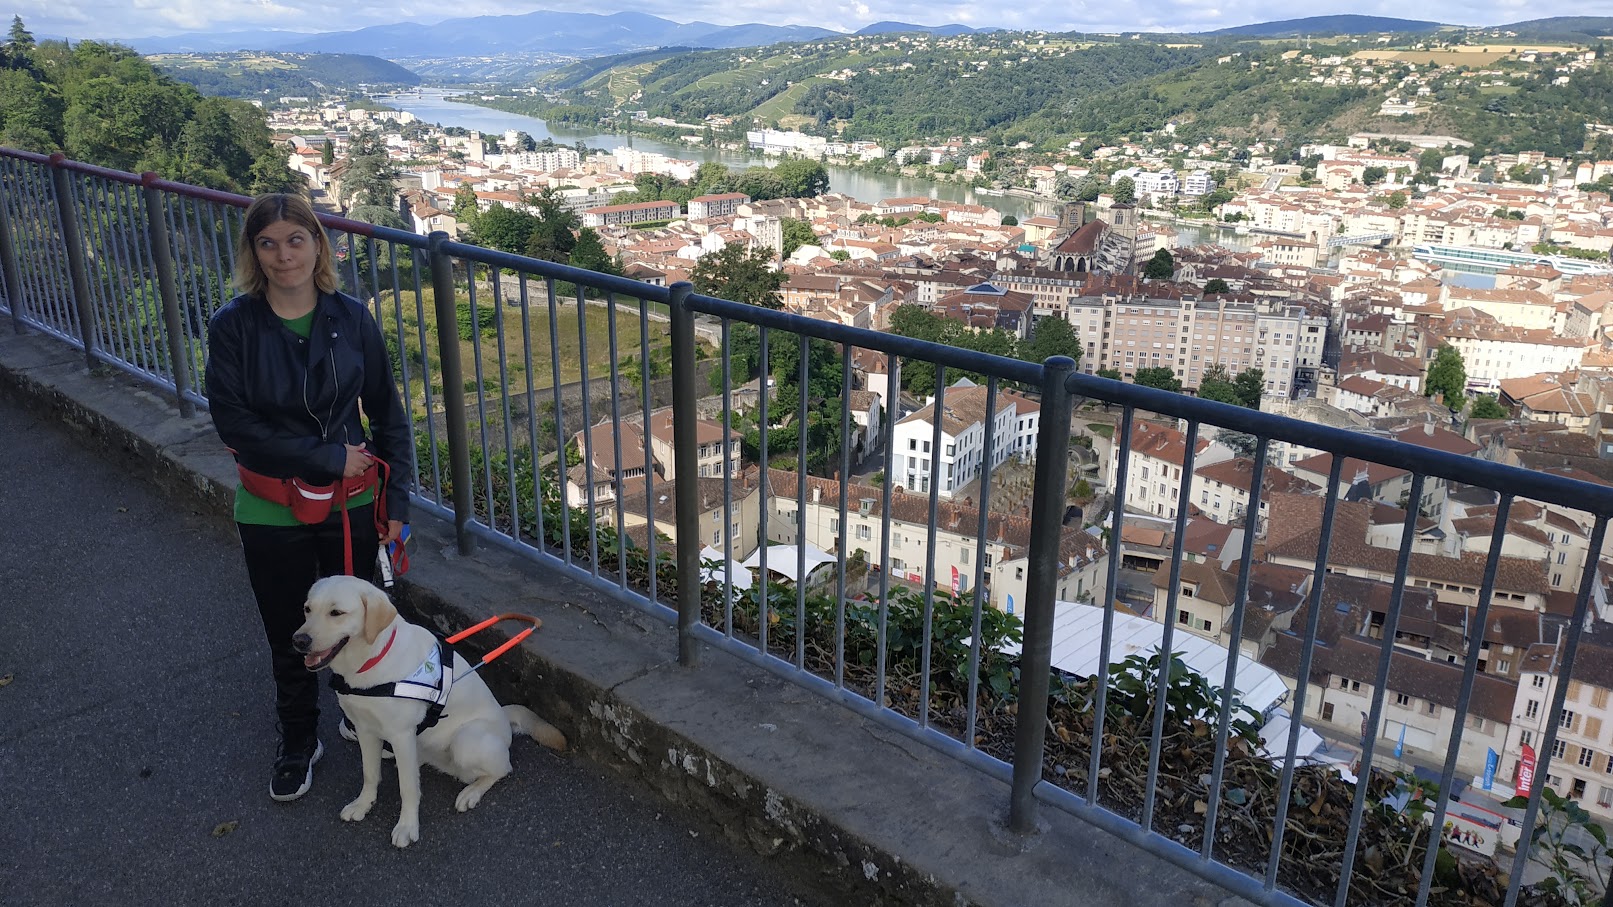 Association de chiens guides d'aveugles de Lyon et du Centre-Est